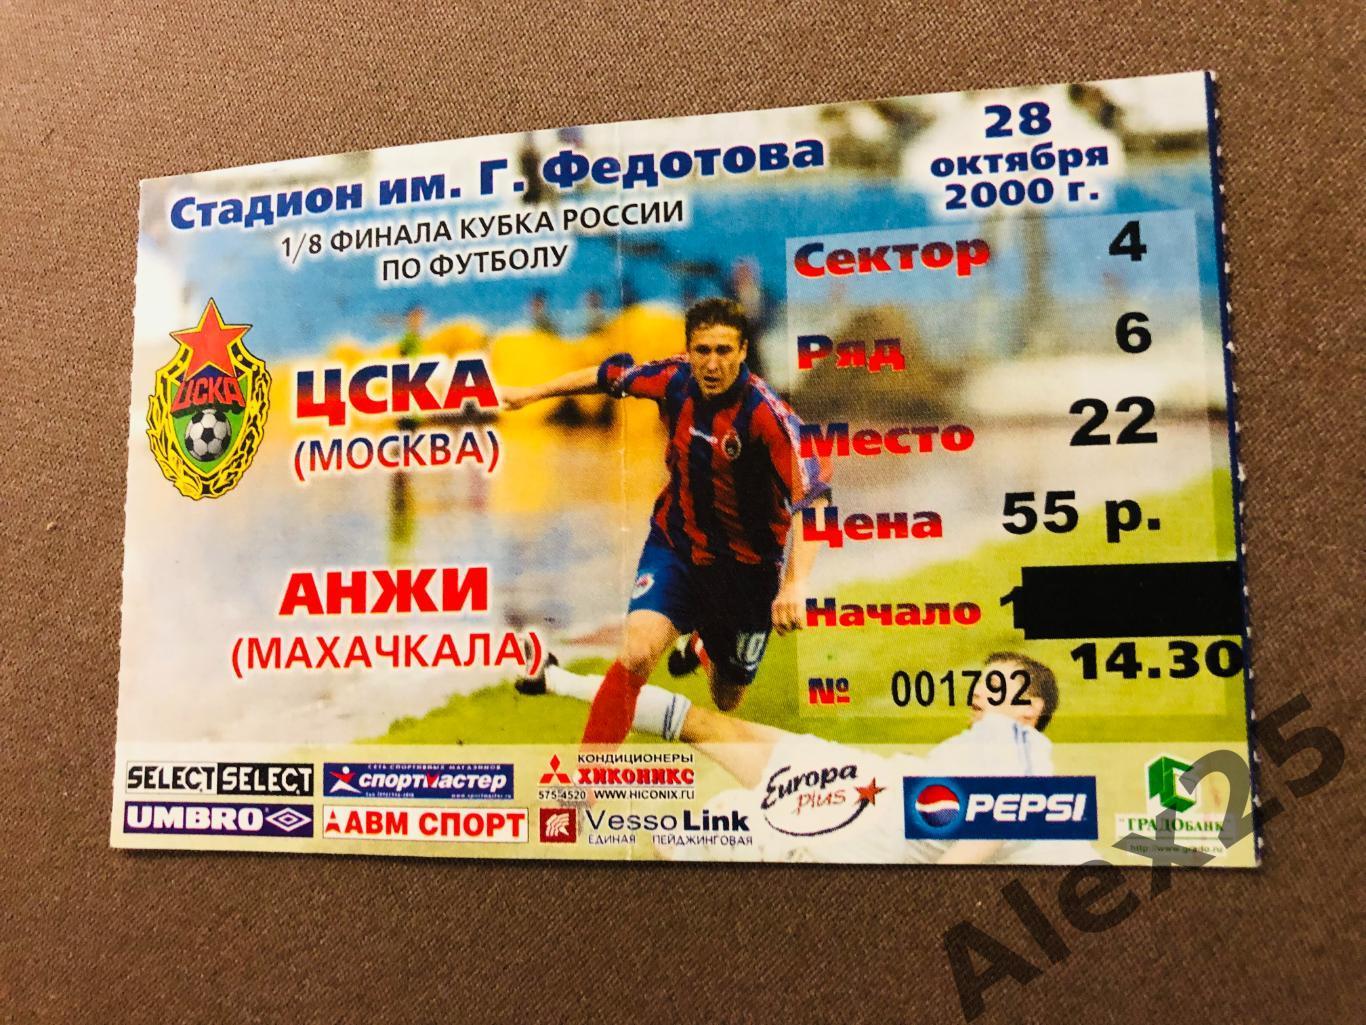 Билет футбол ЦСКА - Анжи 2000 10.28 Кубок